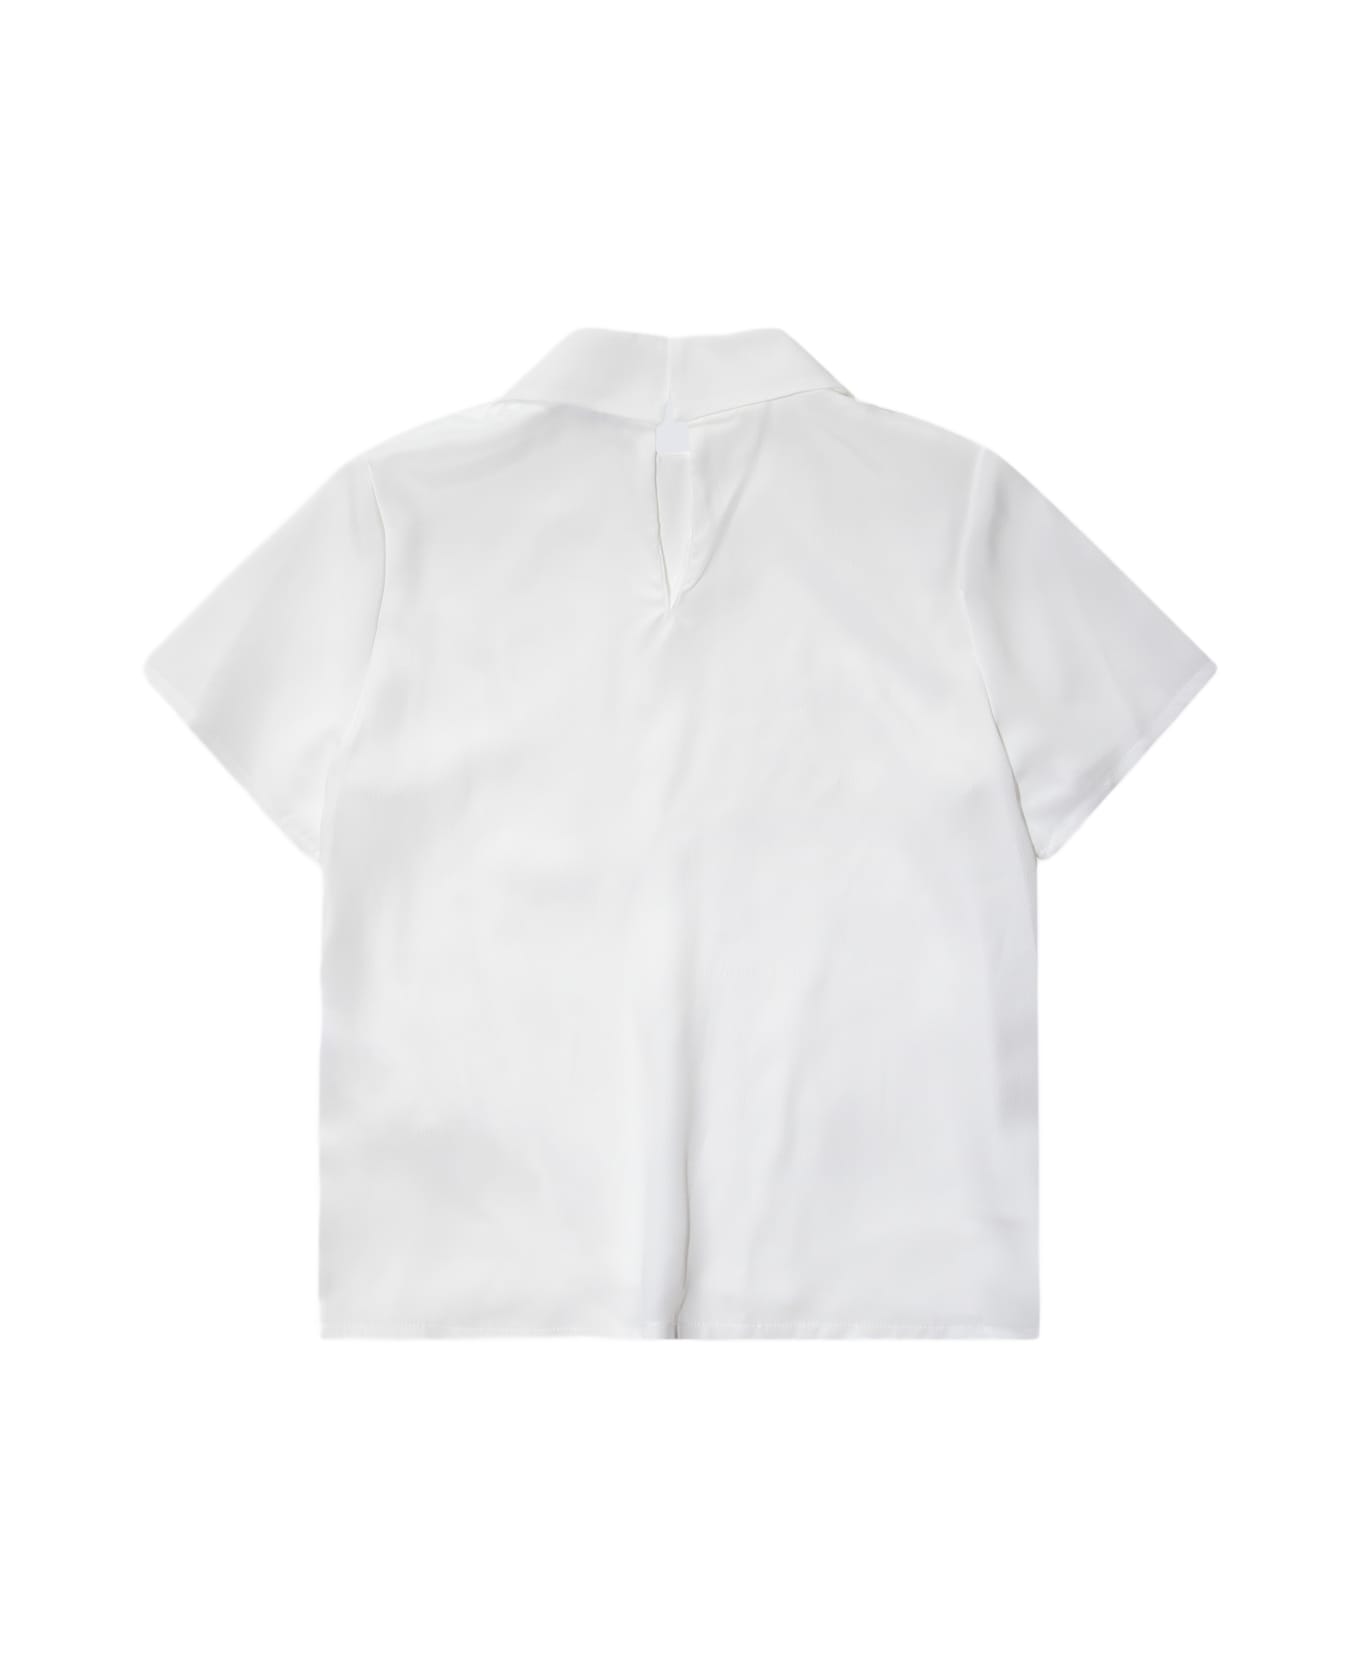 Simonetta White Shirt - White シャツ